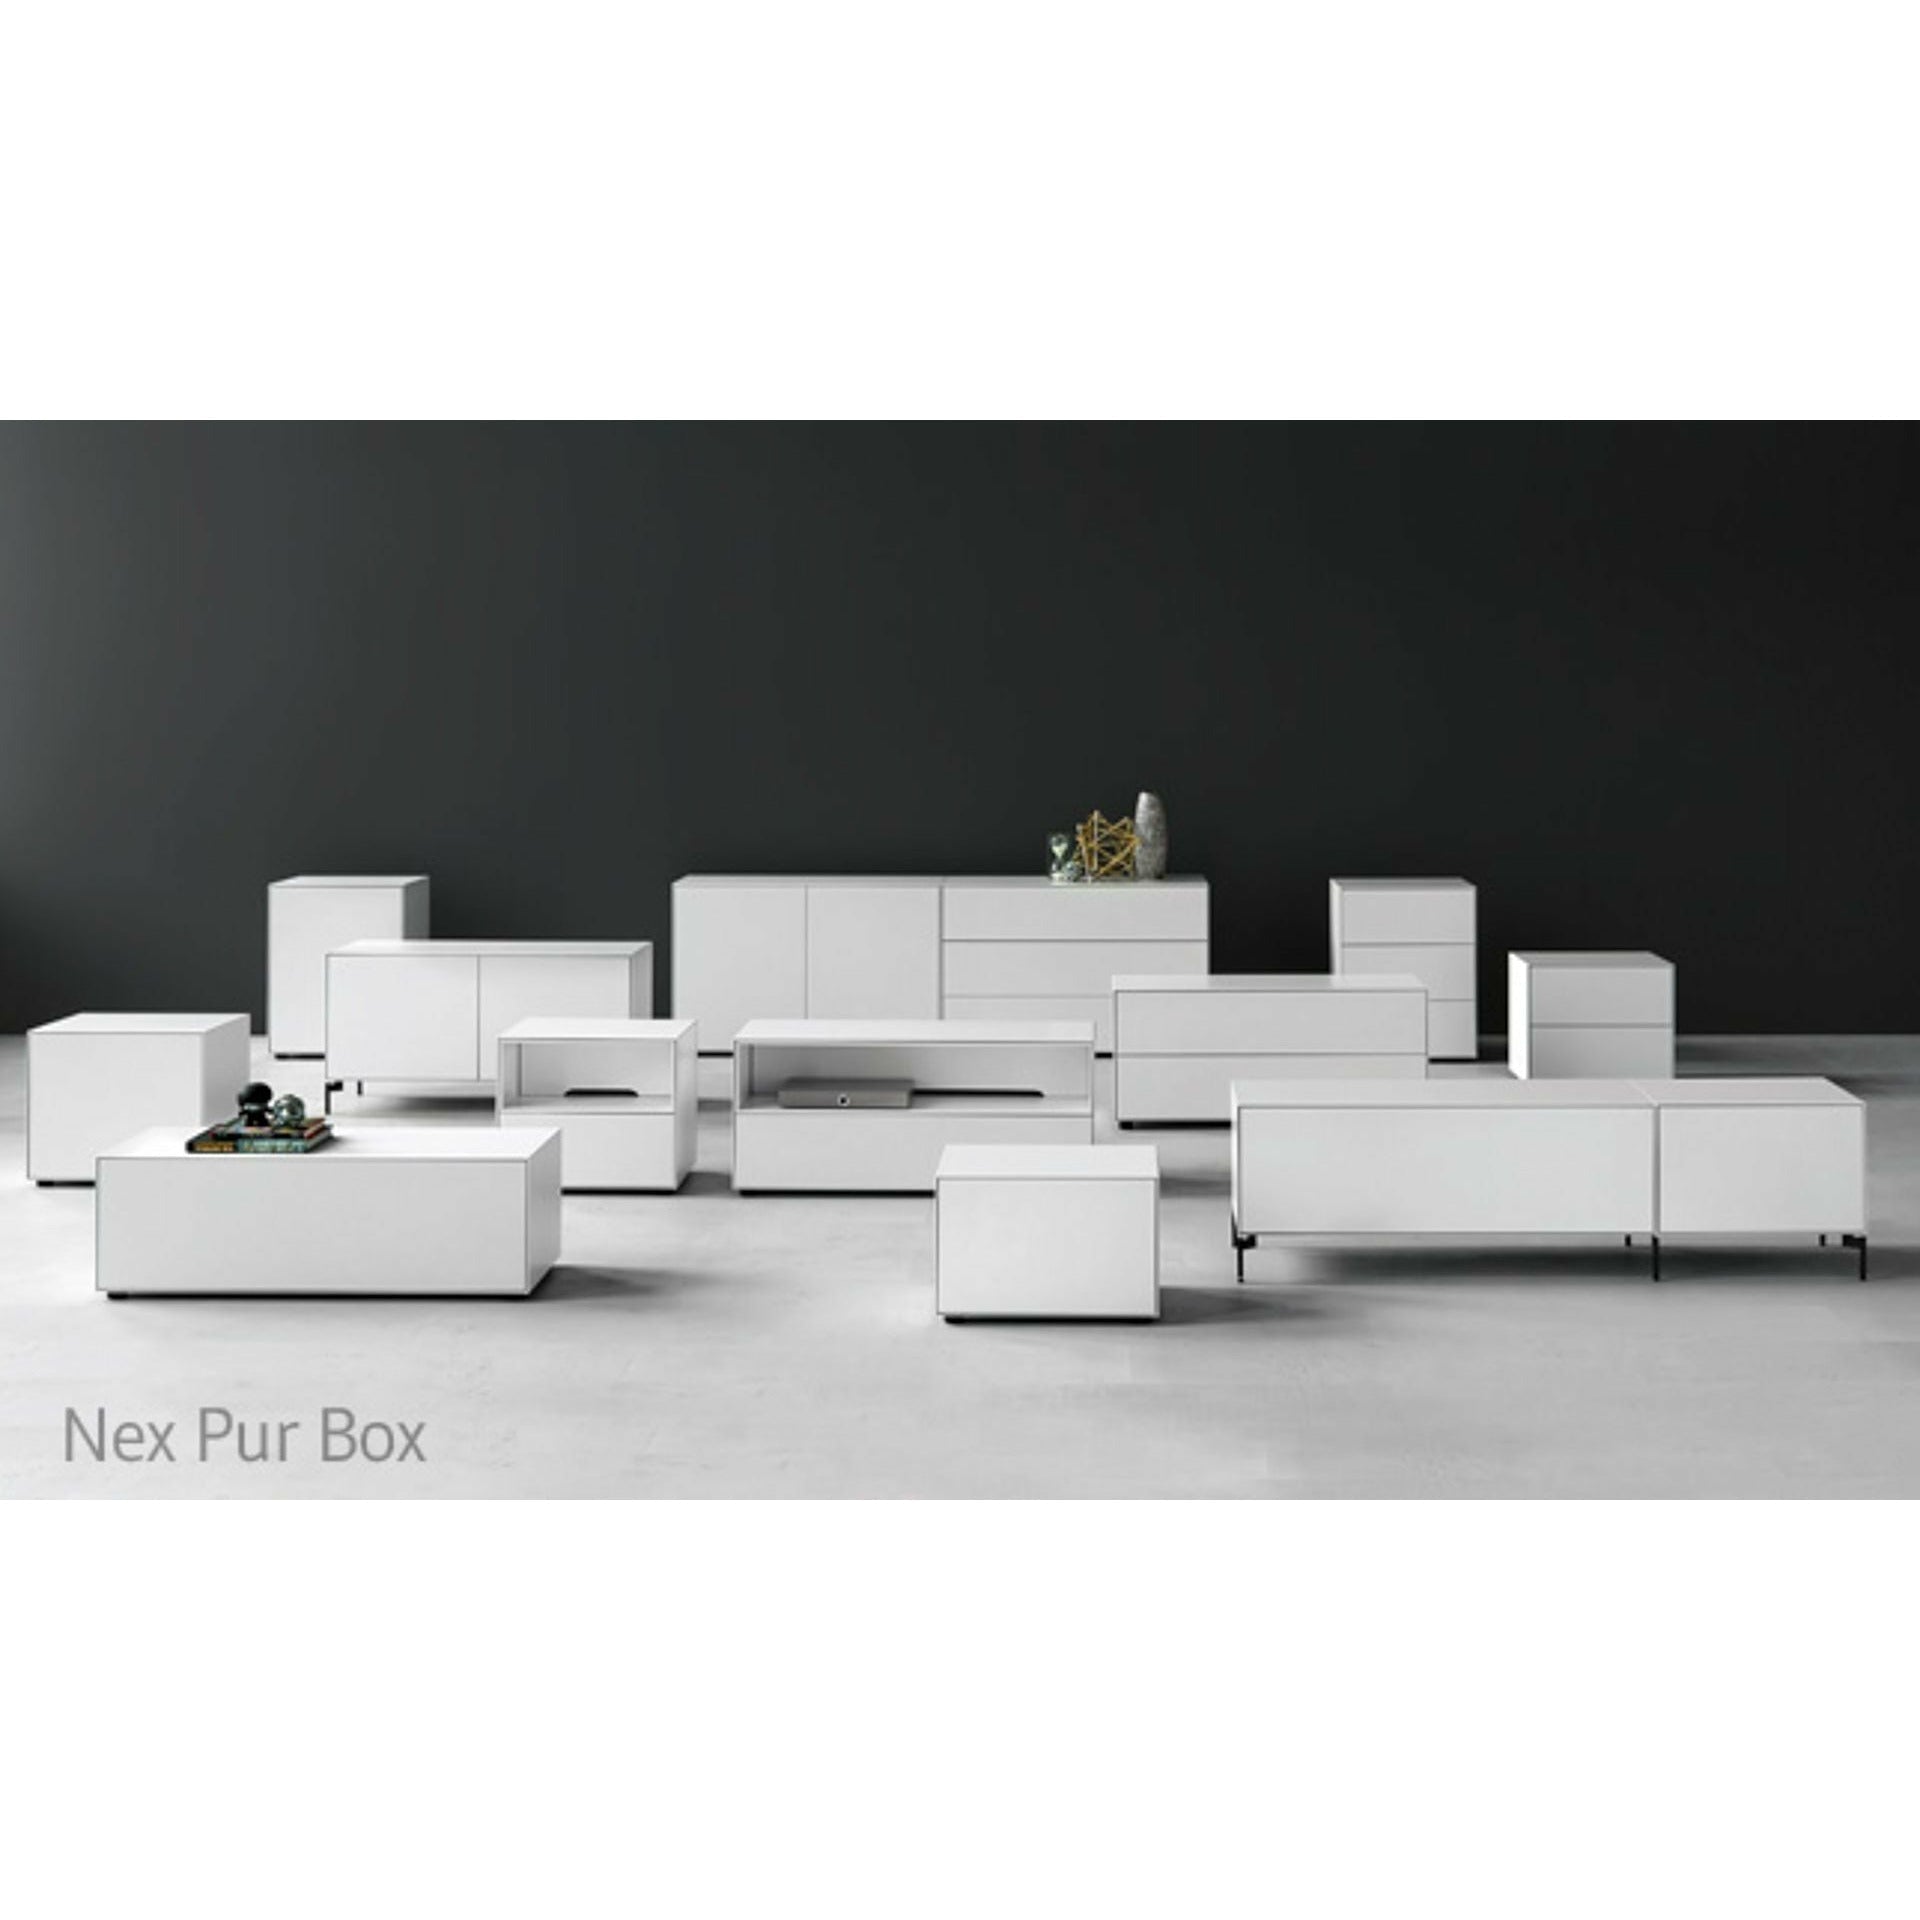 Piure Nex Pur Box Flap Hx W 37,5x120 cm, 1 półka